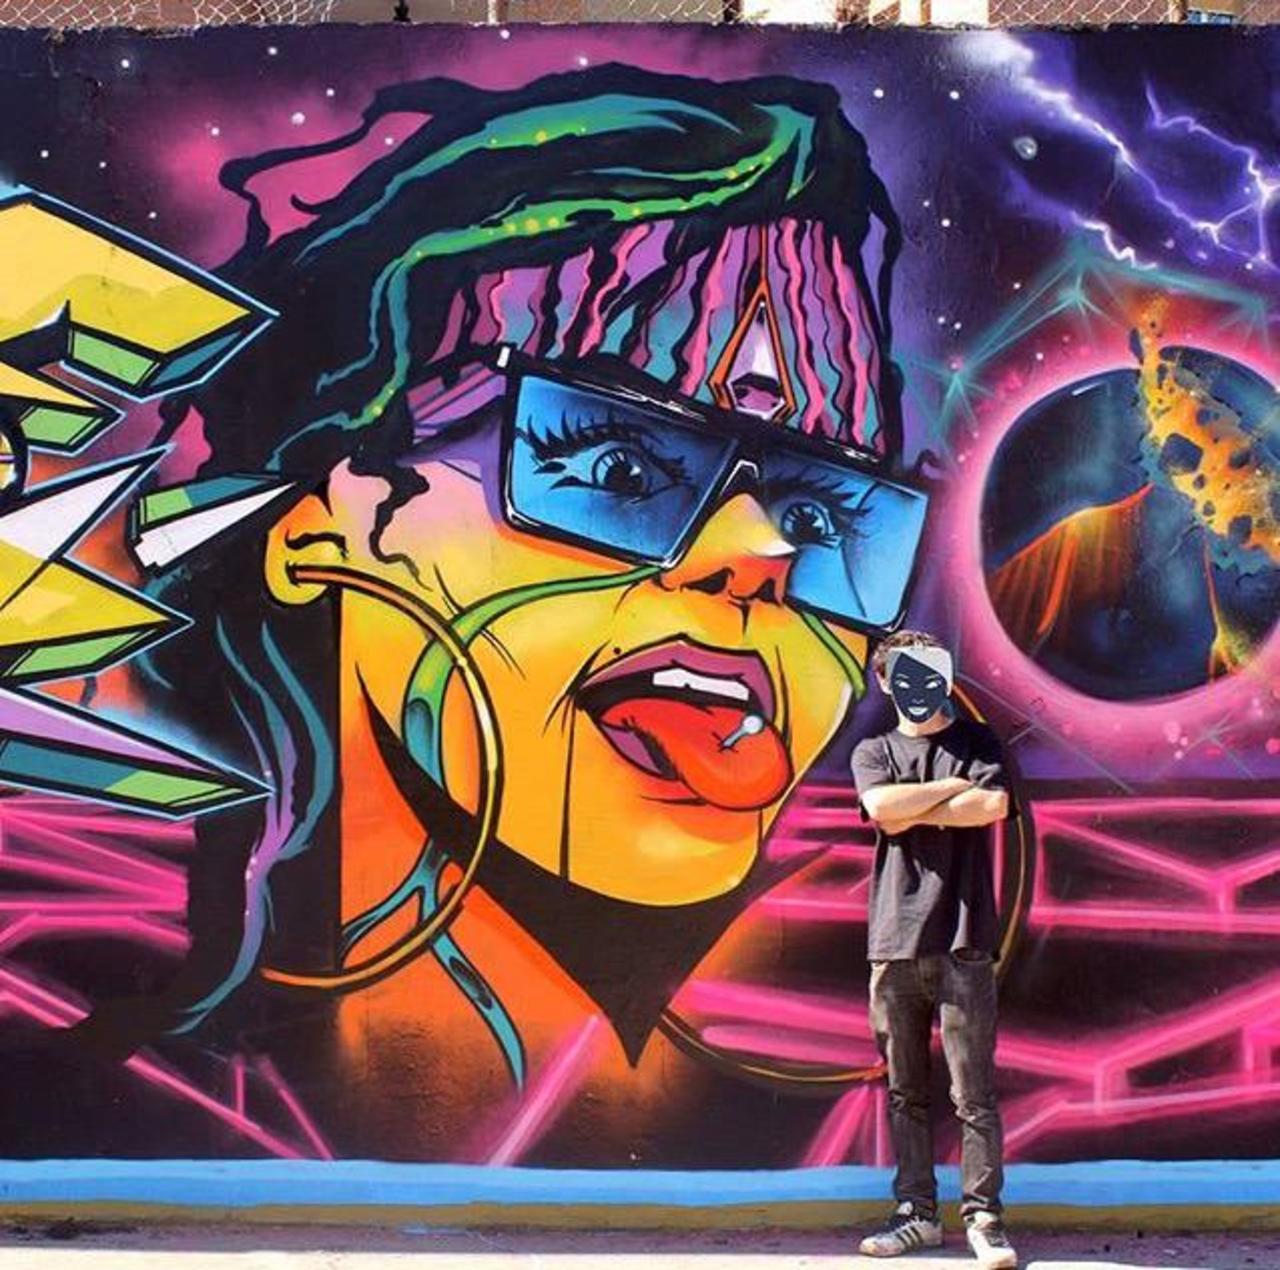 Brilliant new Street Art by the artist Jaycaes

#art #graffiti #mural #streetart http://t.co/JoQTqOgCIv